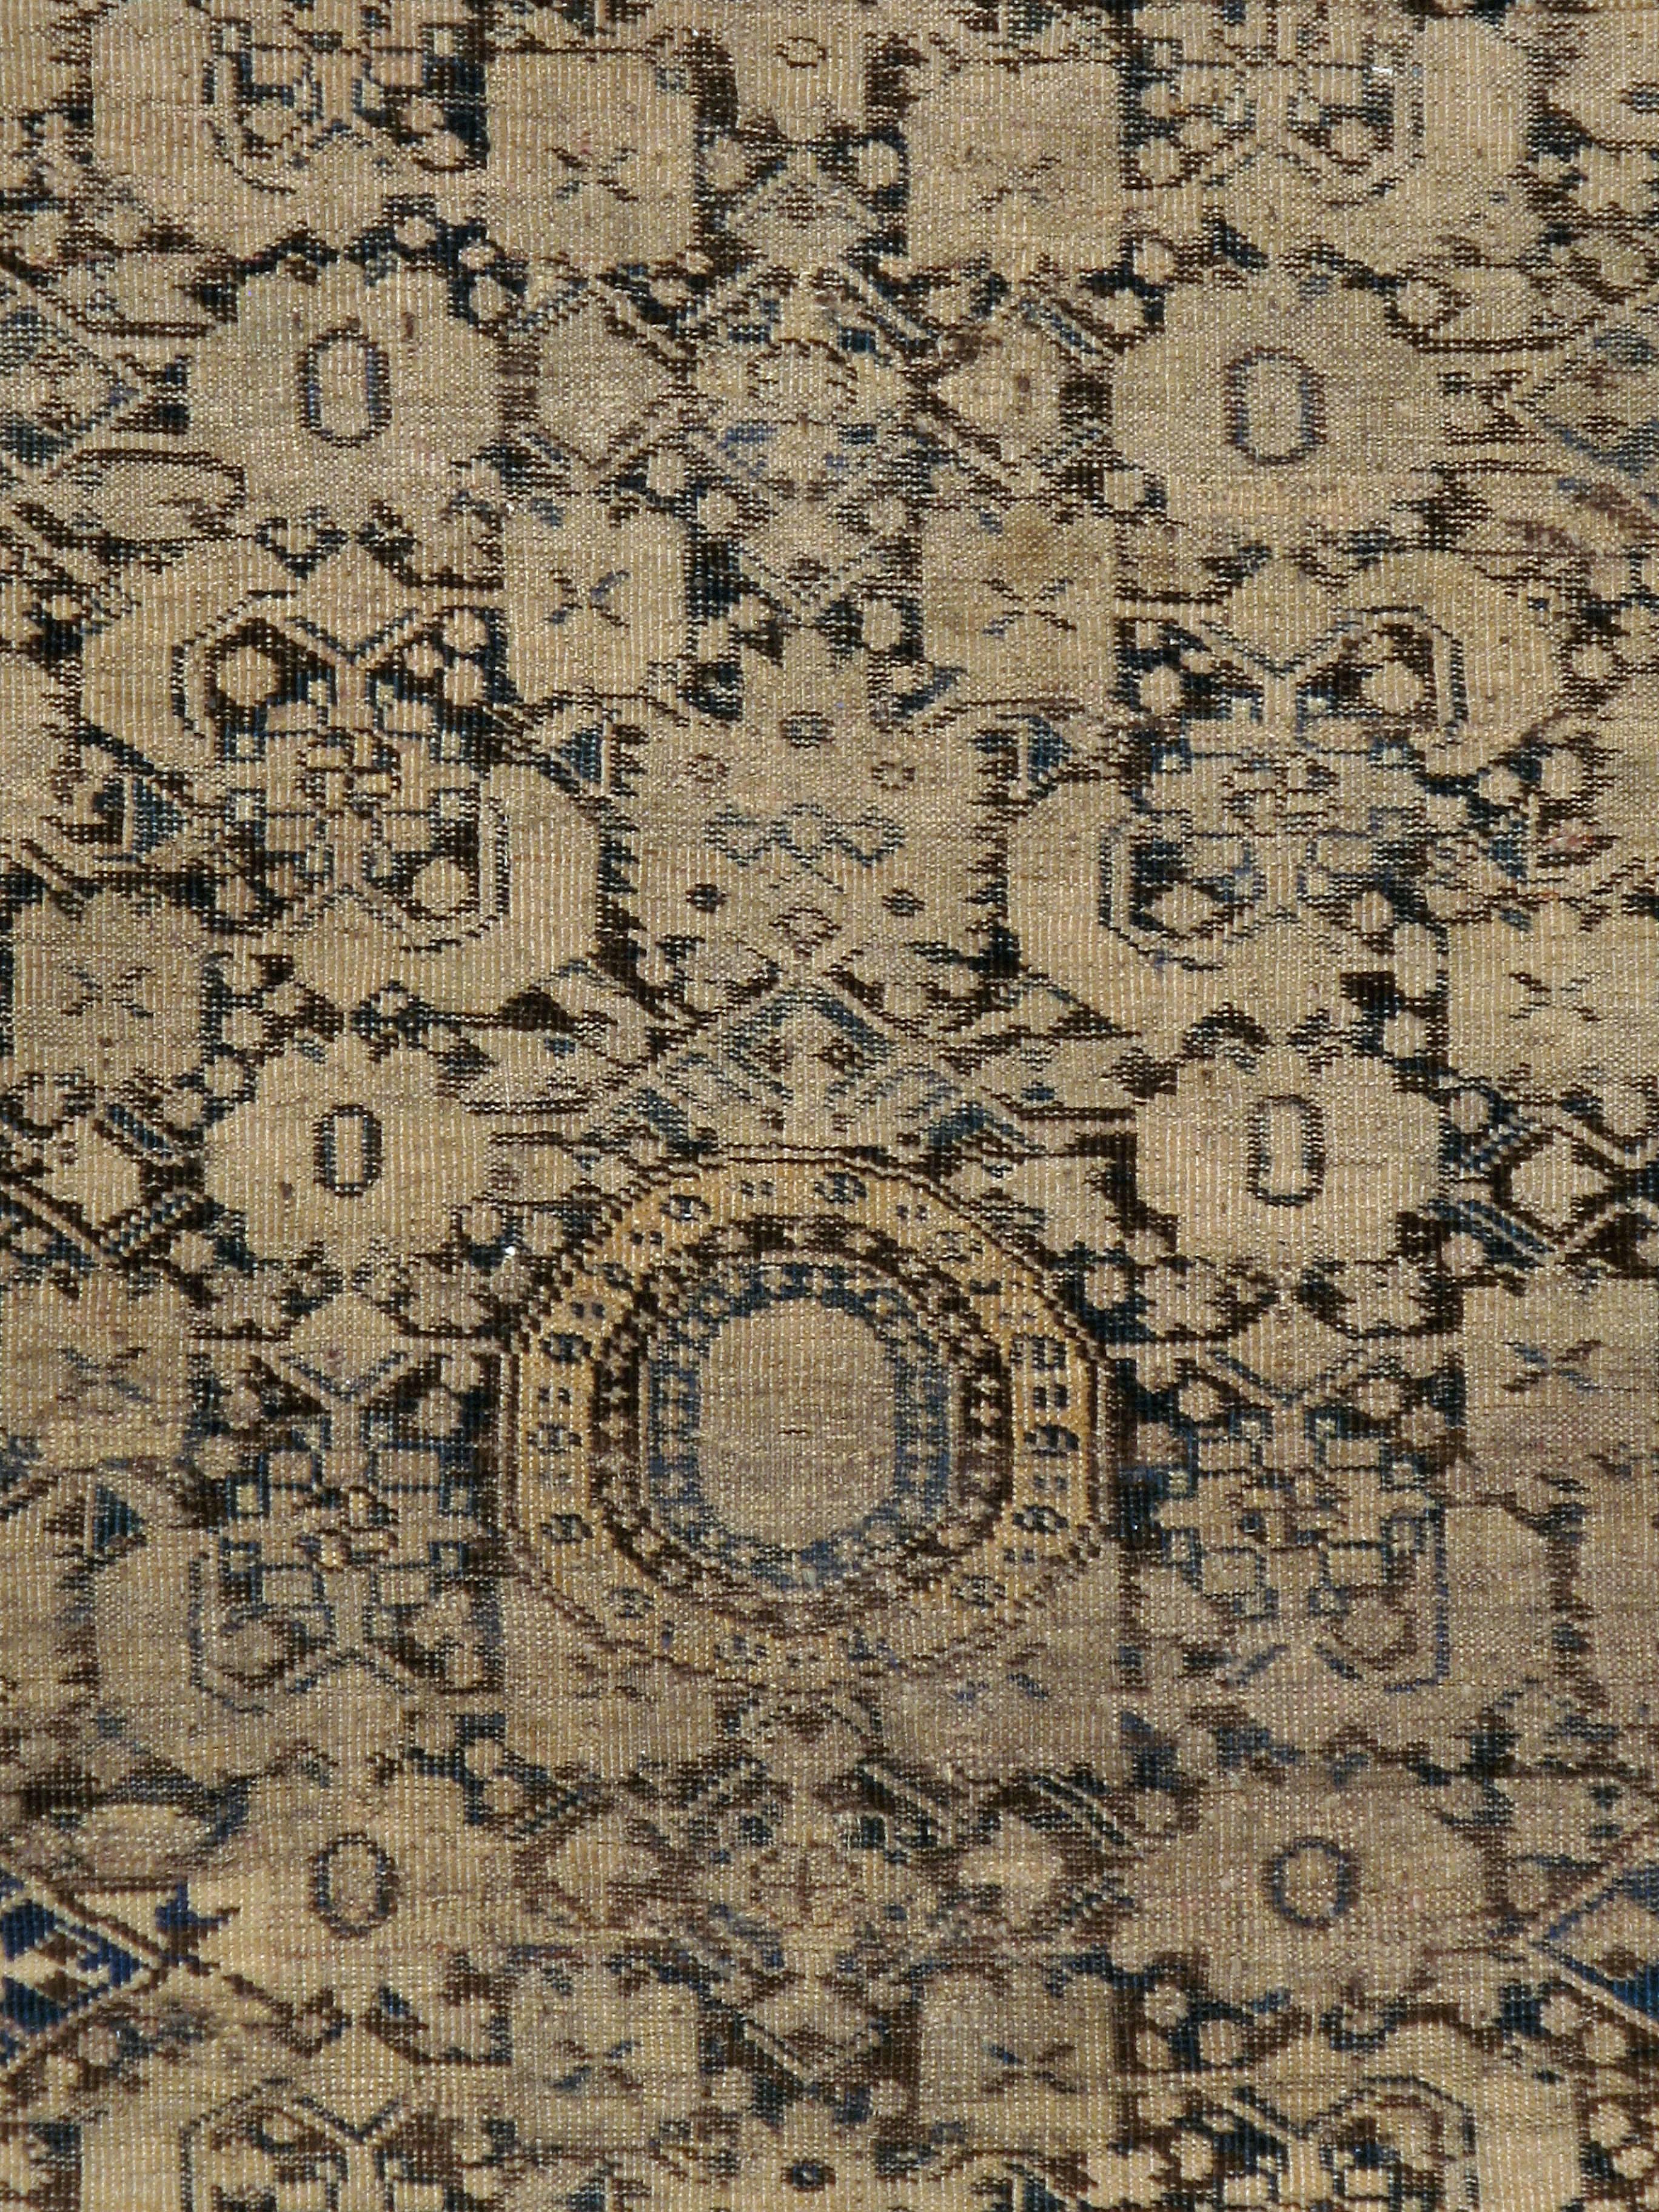 Un ancien tapis galerie turc d'Asie centrale datant du début du 20e siècle.

Mesures : 4' 9